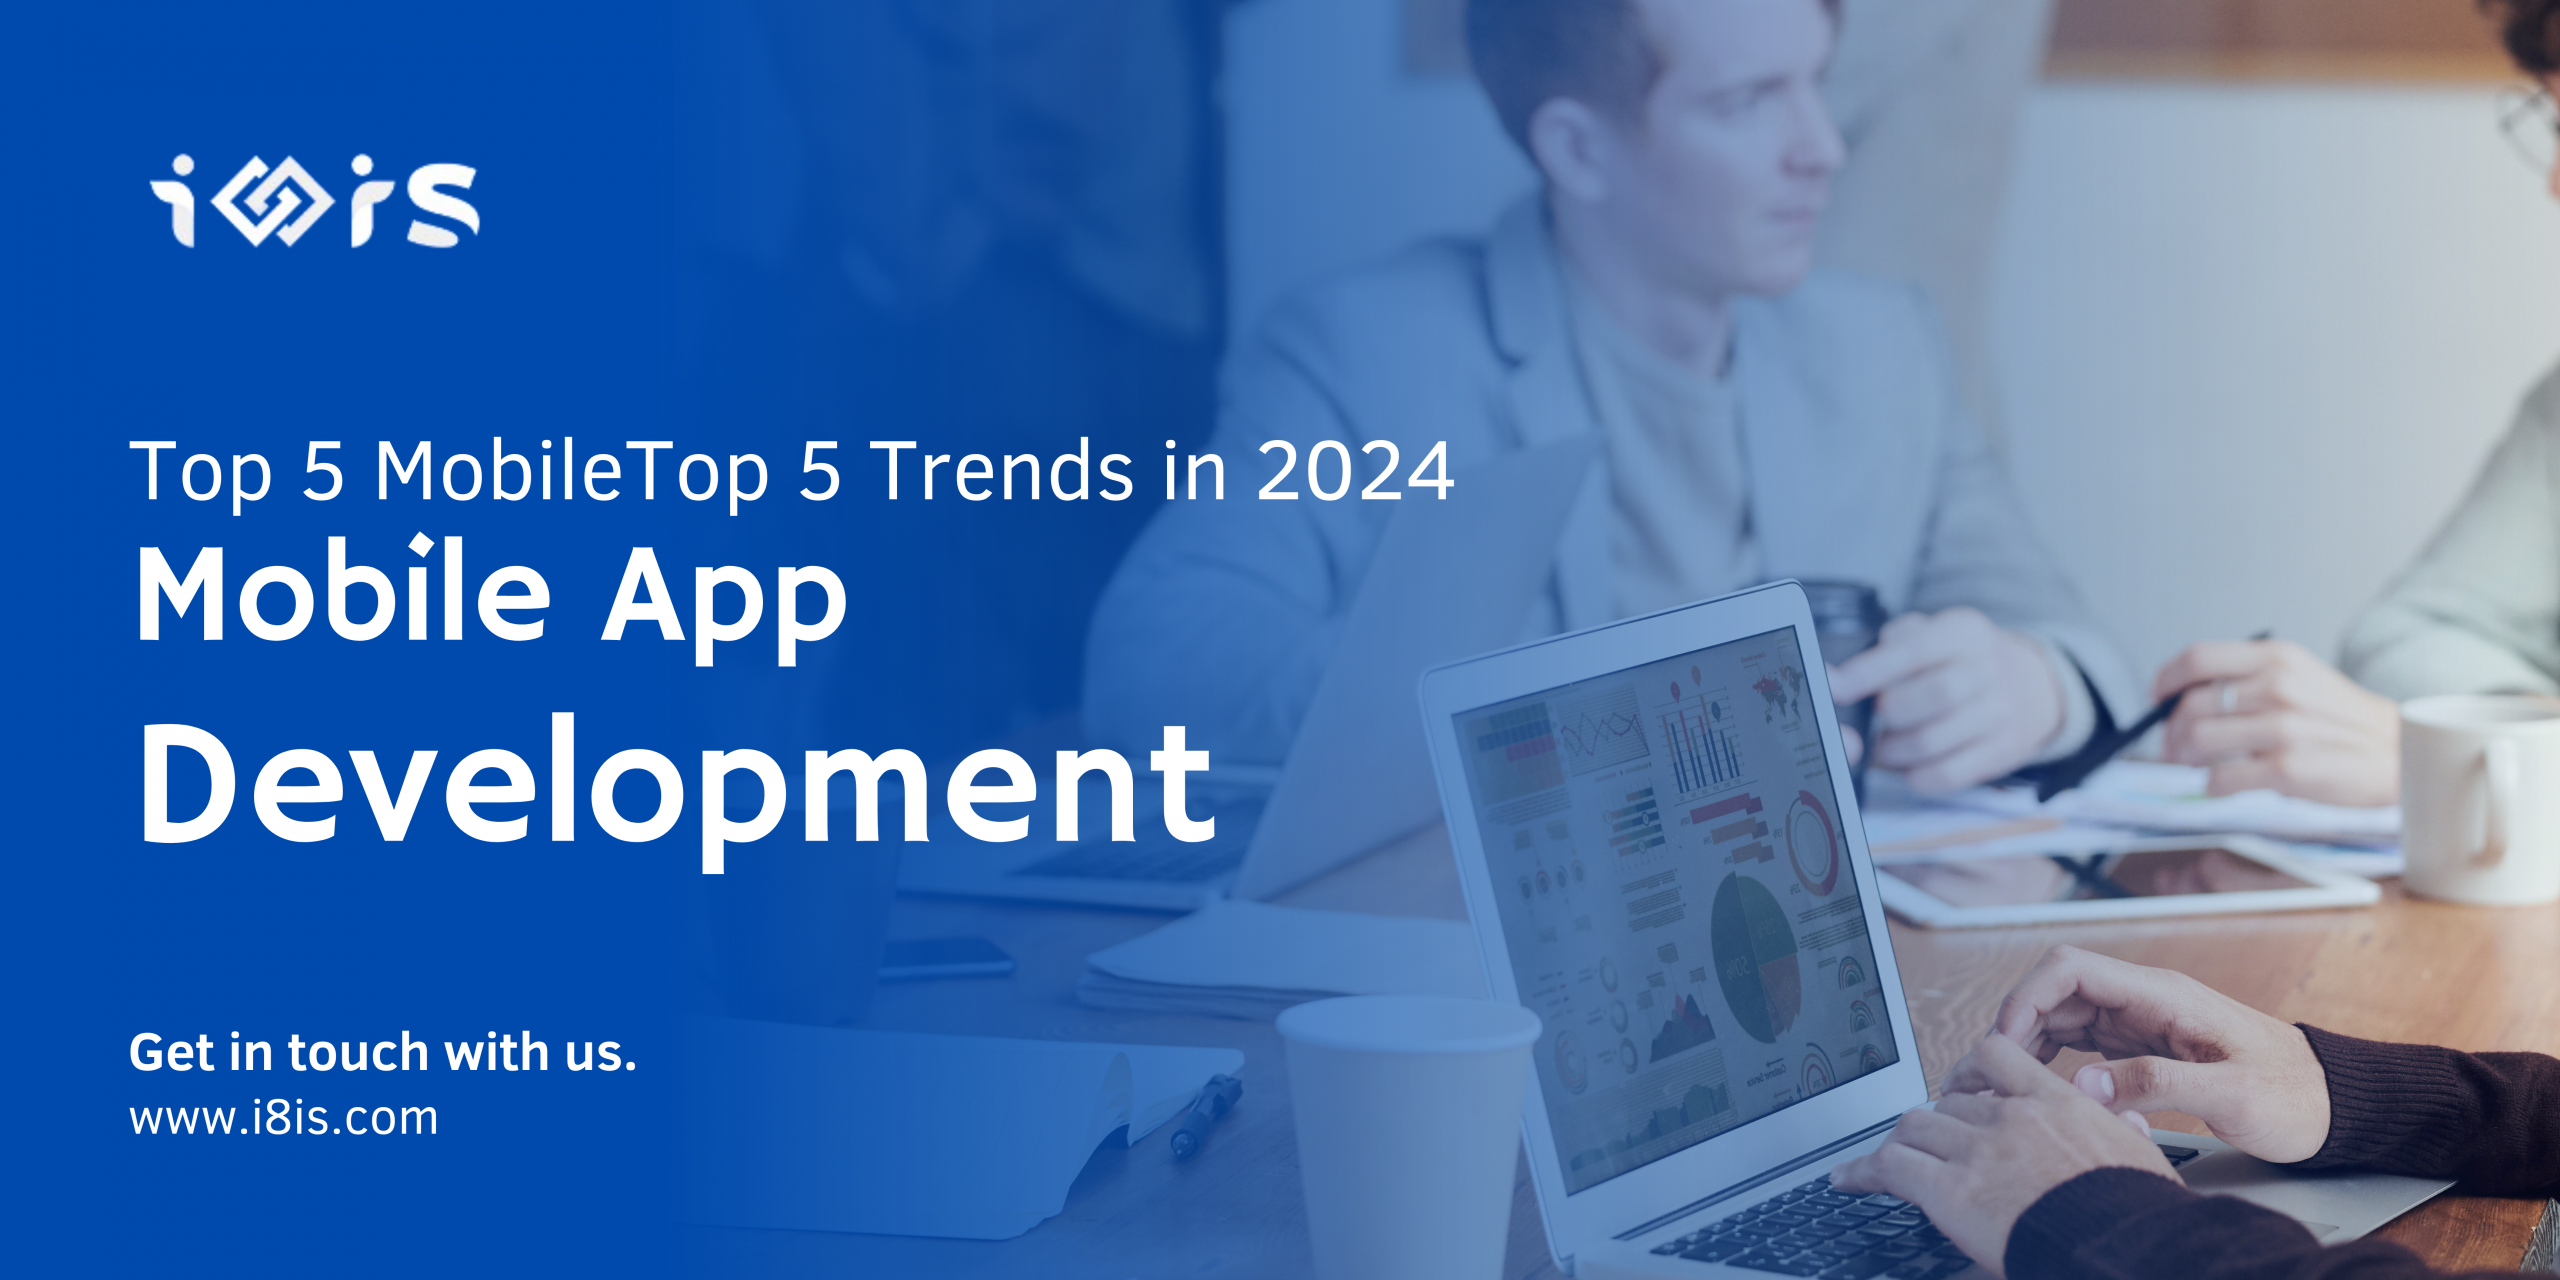 Top 5 Mobile App Development Trends in 2024